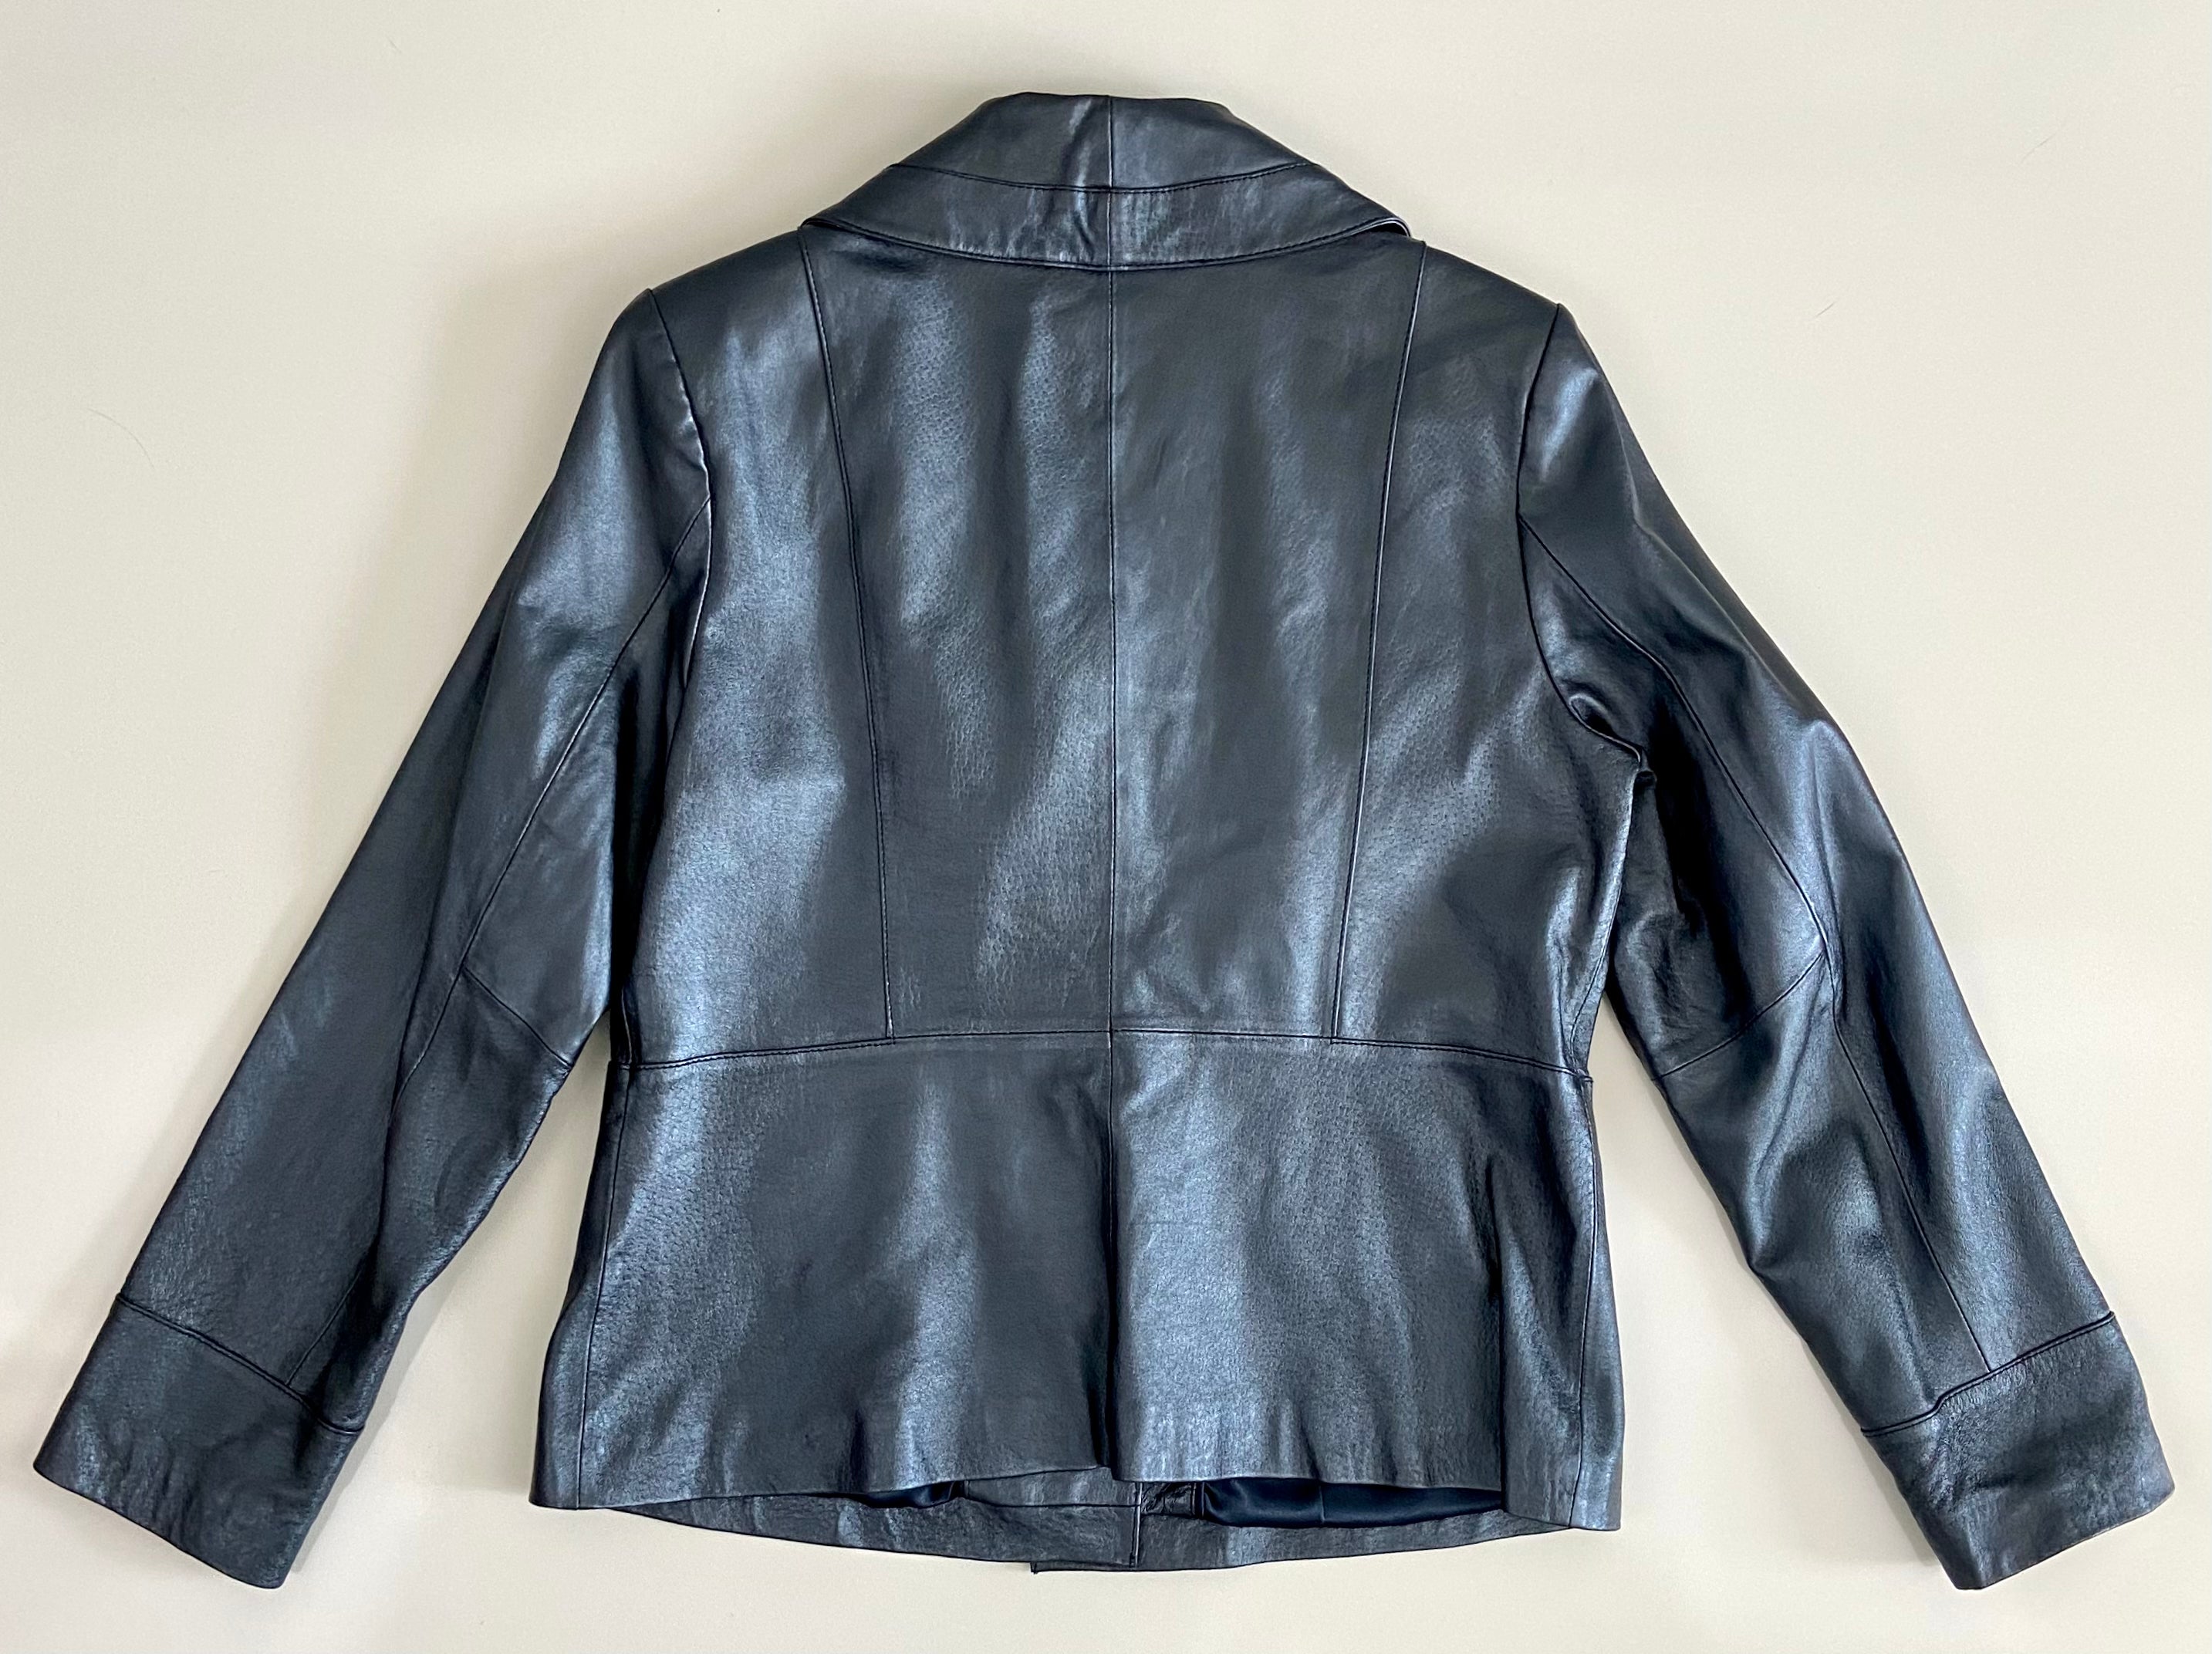 Vintage metallic blue leather jacket